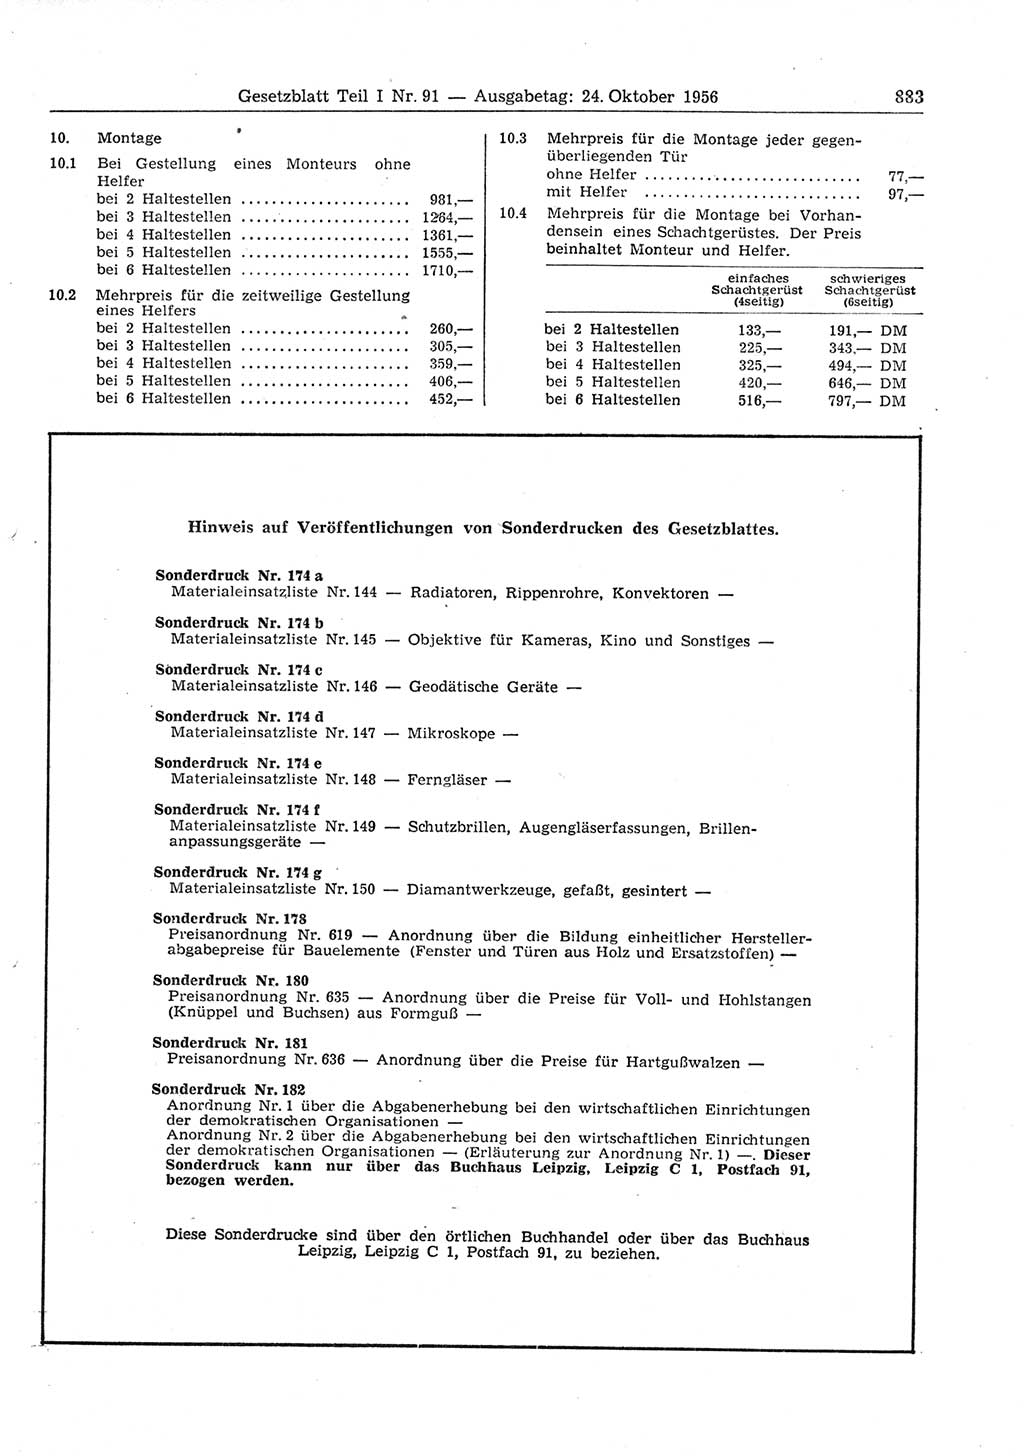 Gesetzblatt (GBl.) der Deutschen Demokratischen Republik (DDR) Teil Ⅰ 1956, Seite 883 (GBl. DDR Ⅰ 1956, S. 883)